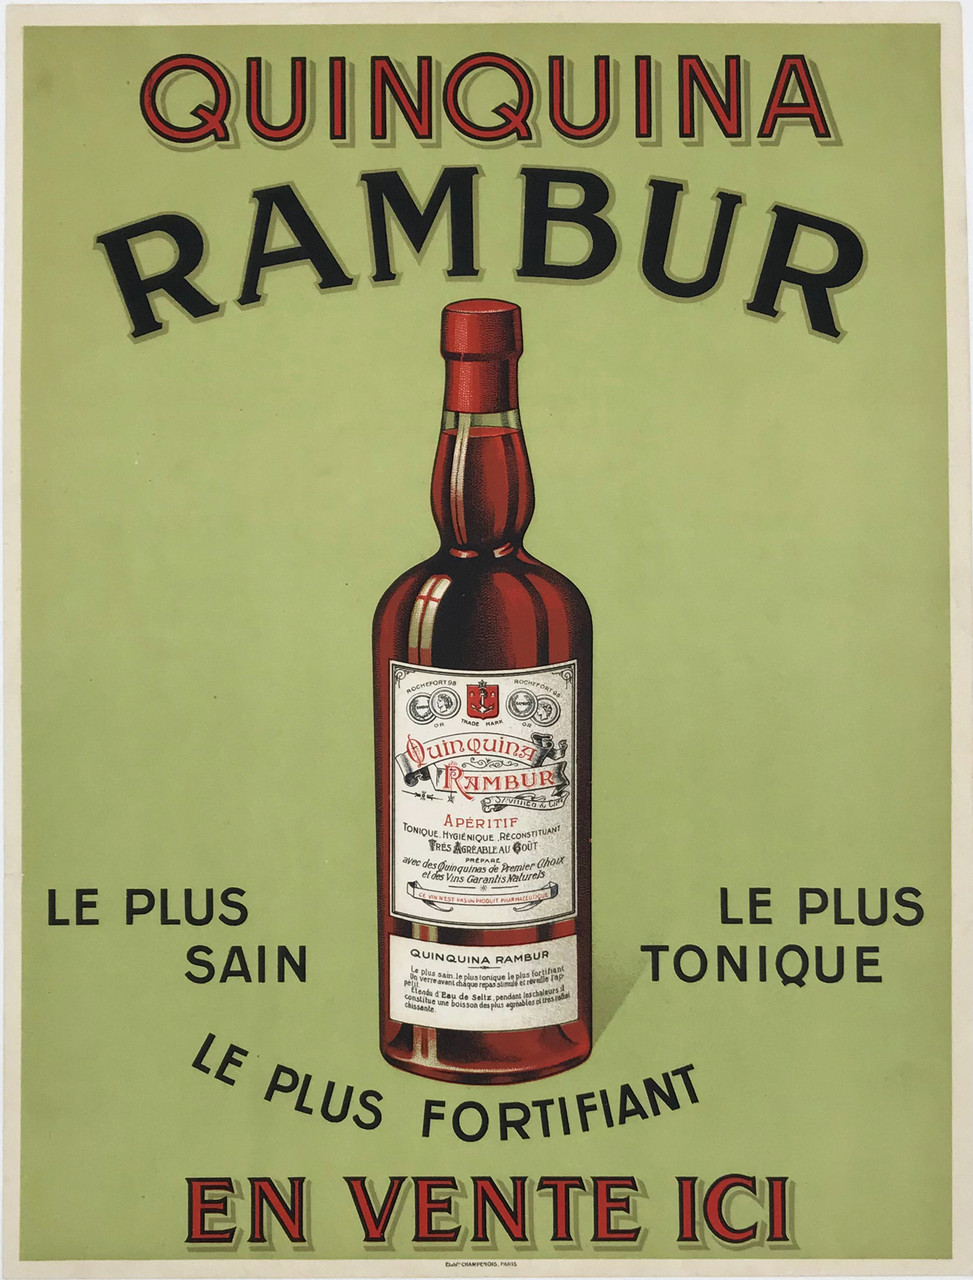 Quinquina Rambur Apertif Original 1920 Vintage French Cordial Company Advertisement Stone Lithograph Poster Linen Backed. Le Plus Sain - Le Plus Tonic - Le Plus Fortifiant